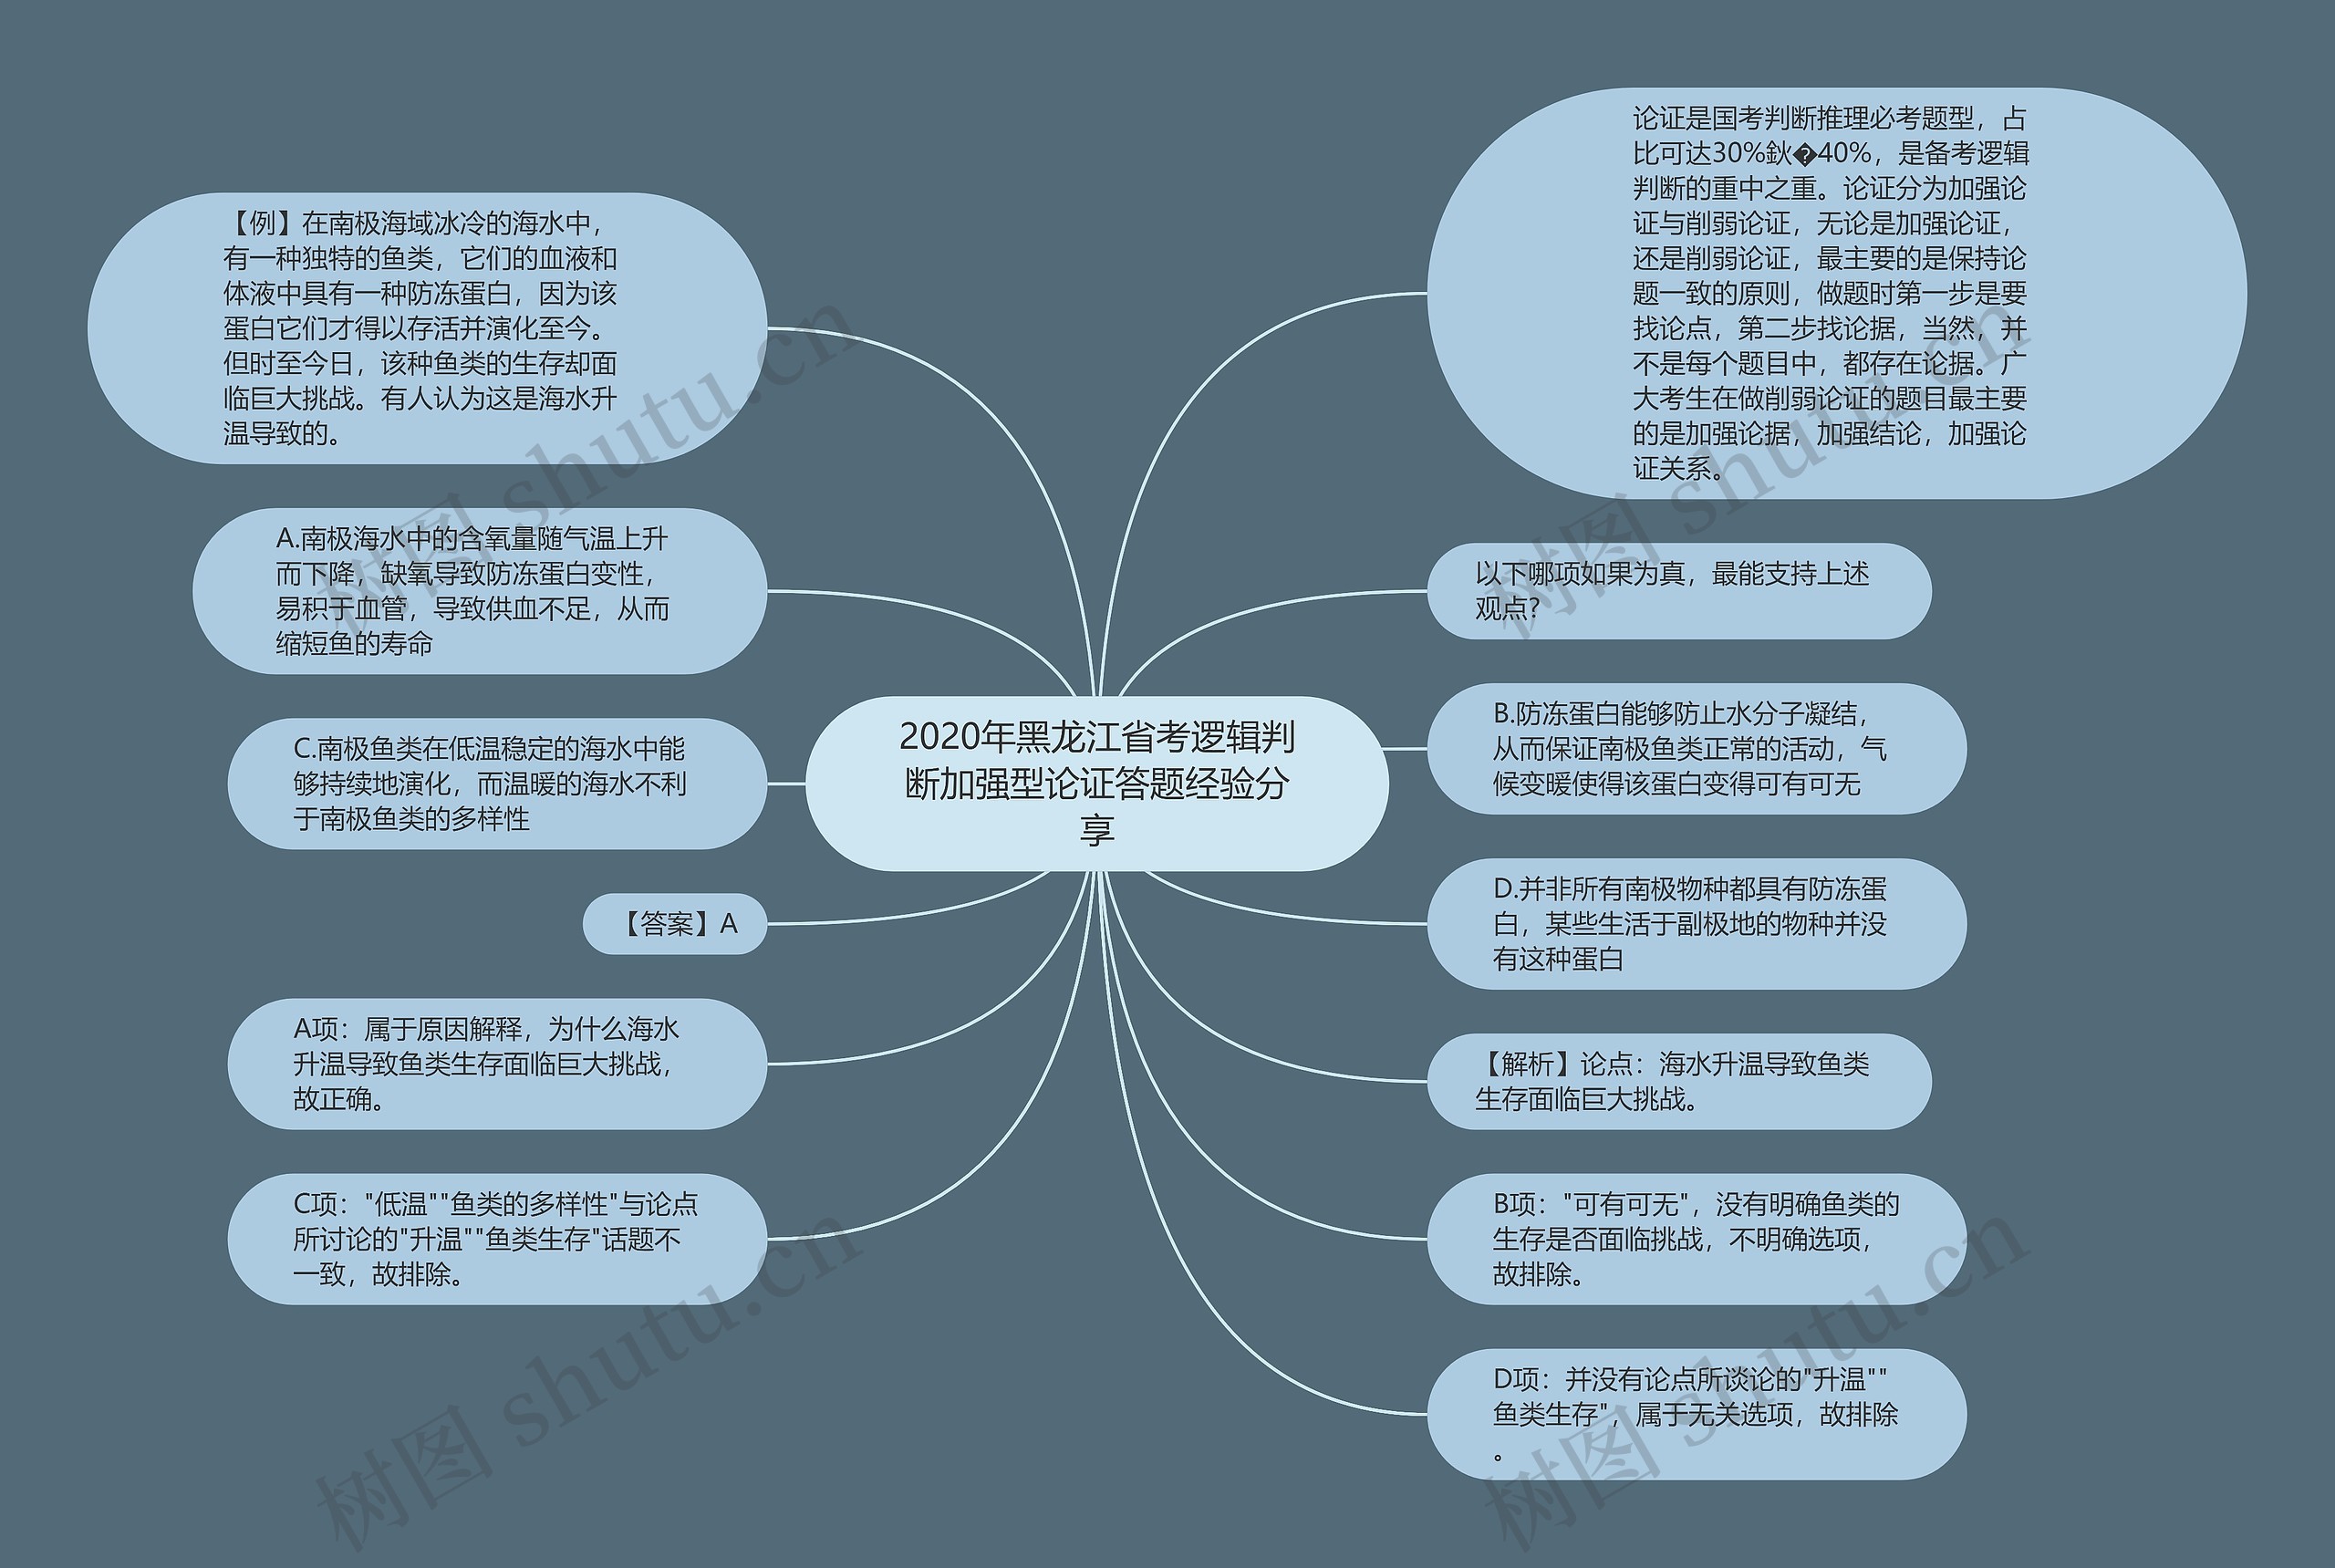 2020年黑龙江省考逻辑判断加强型论证答题经验分享